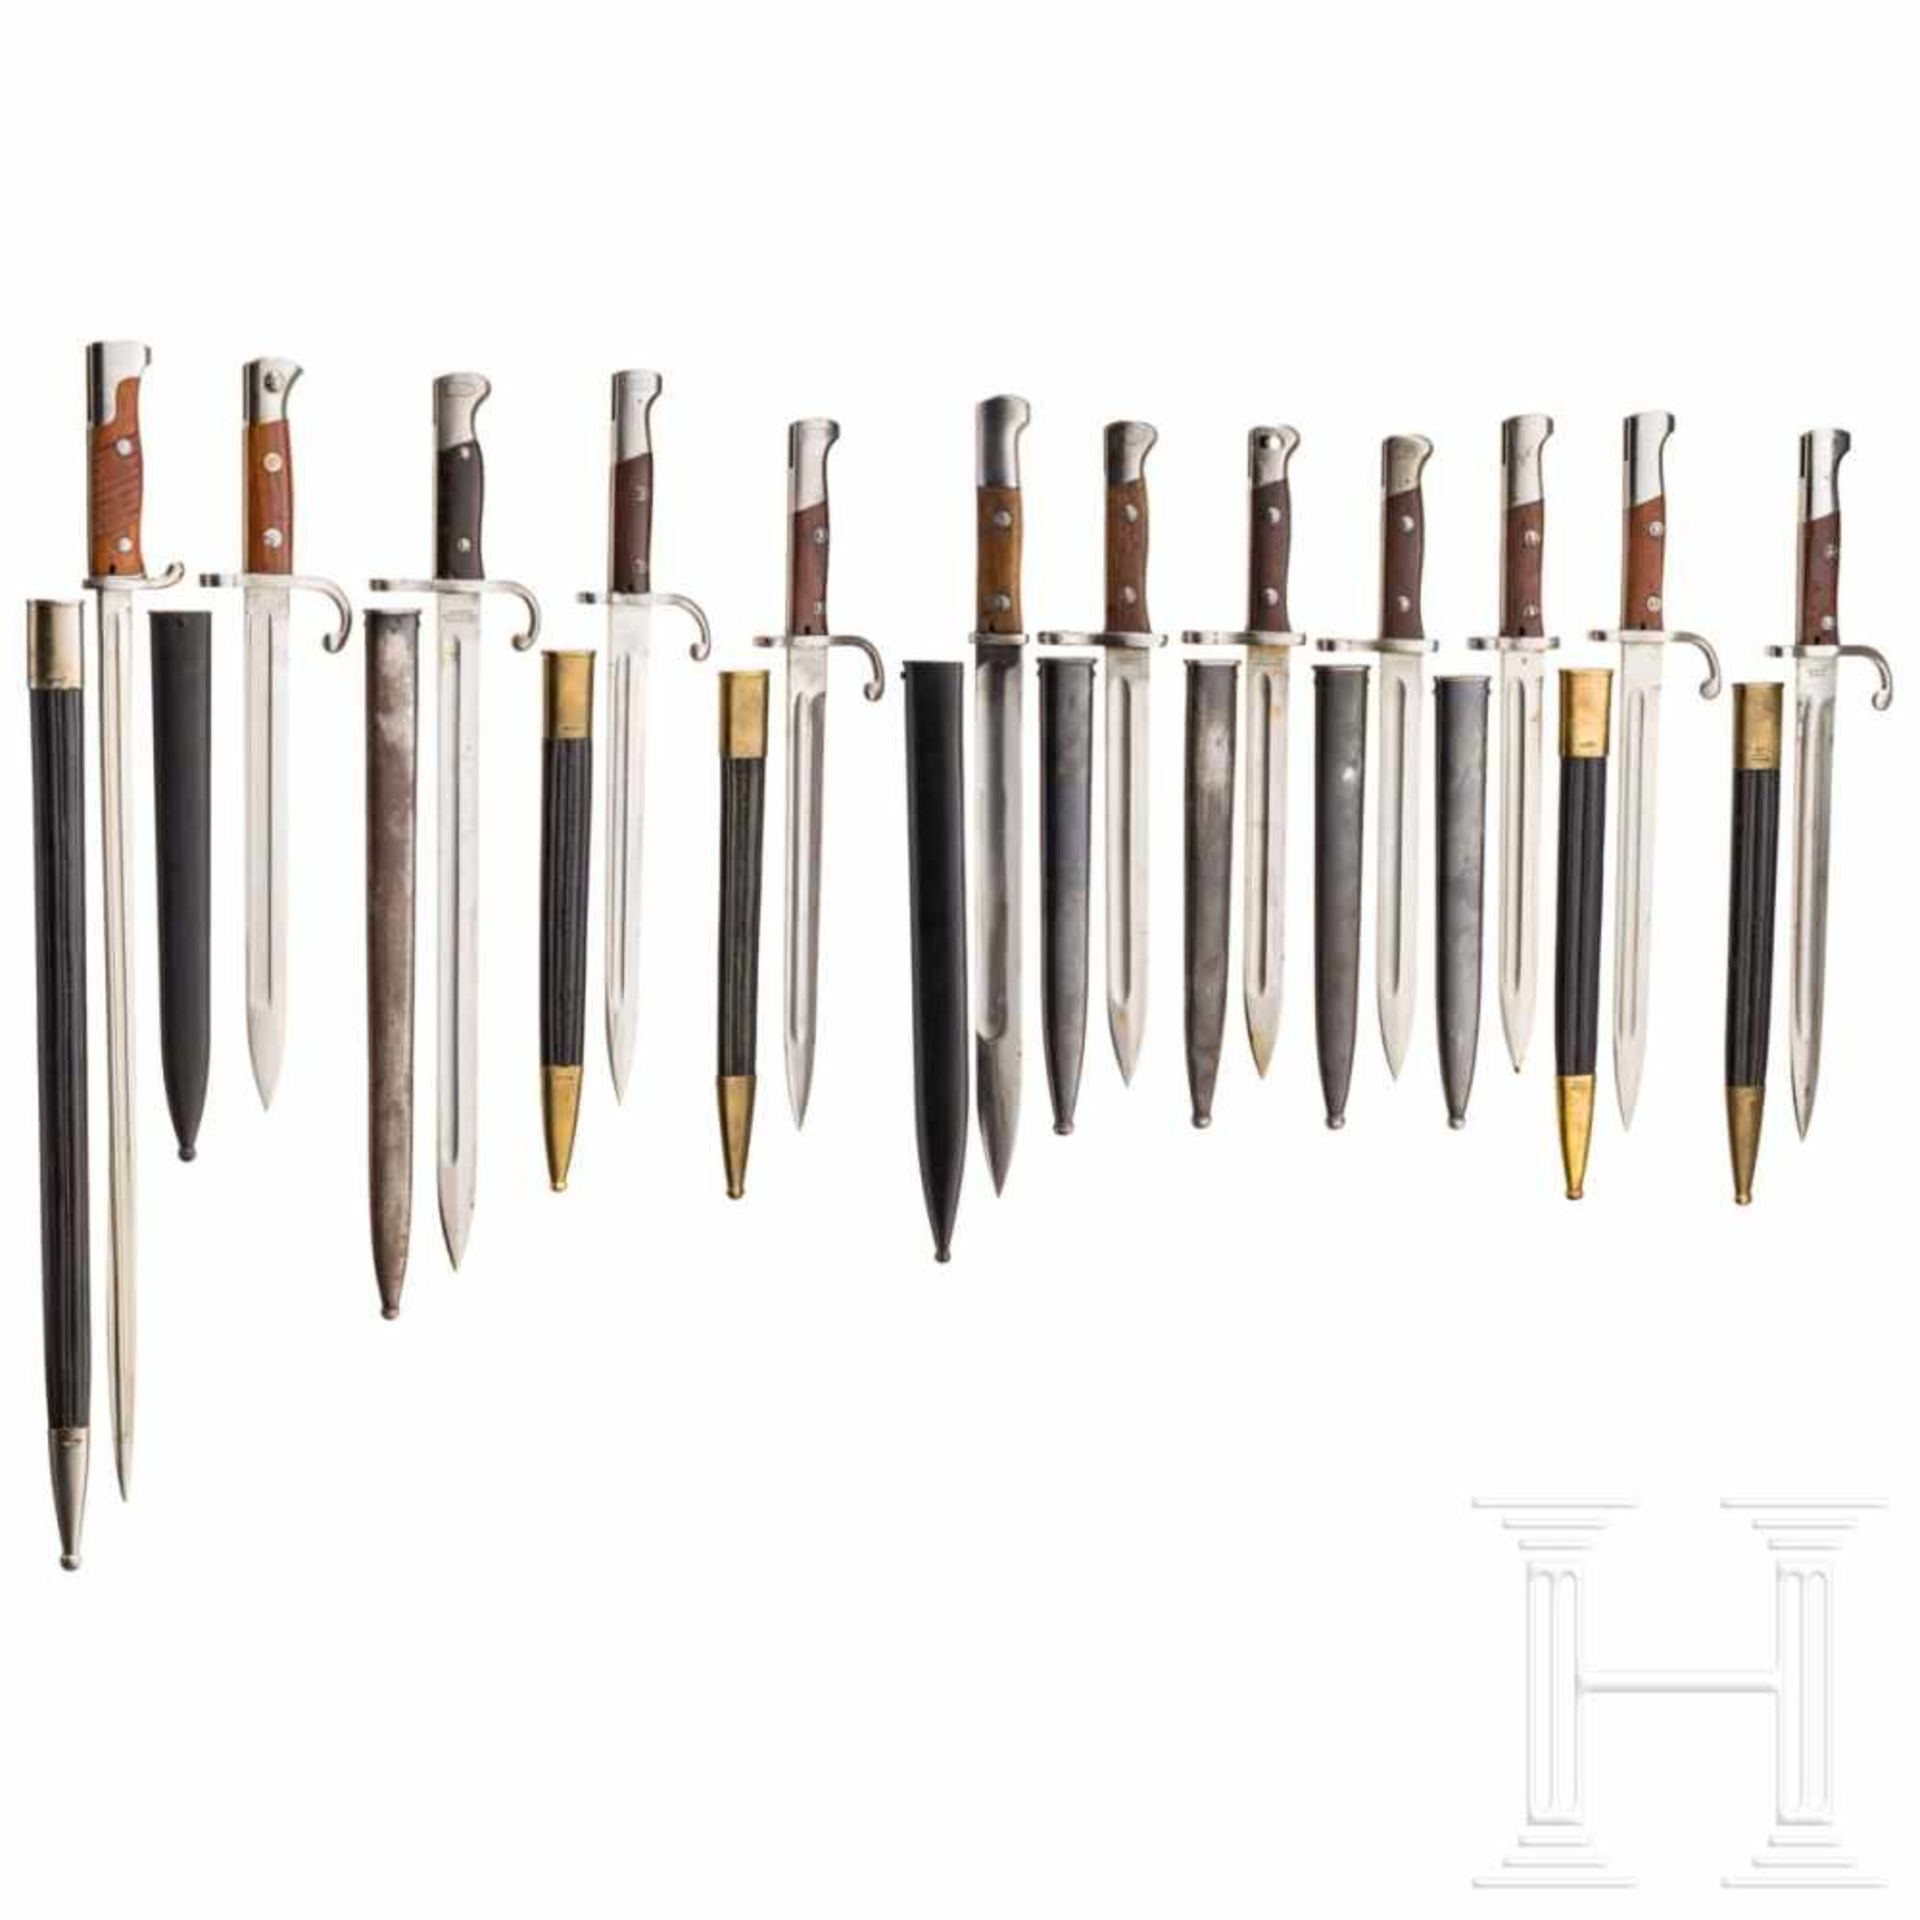 South America - twelve bayonets (Simson, Weyersberg, OEWG)Ein schön erhaltenes peruanisches Bajonett - Bild 2 aus 2